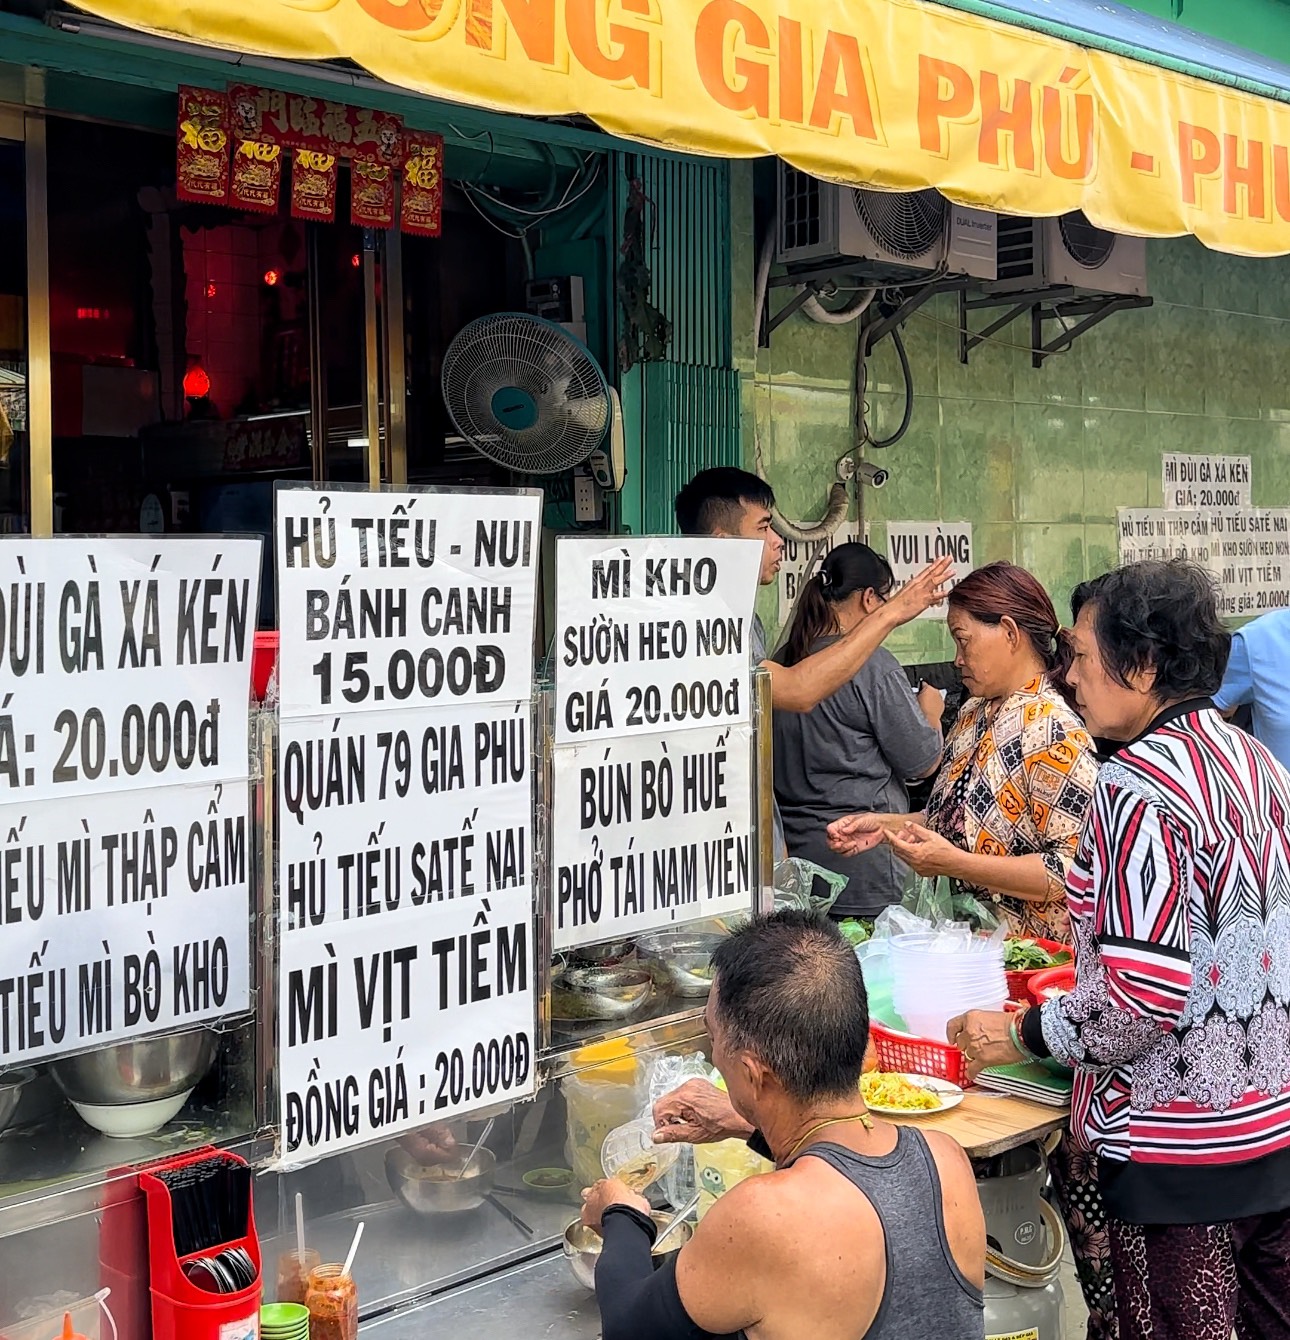 Độc lạ quán ăn người Hoa khu Chợ Lớn giá 15.000 - 20.000 đồng/phần, khách đông nghẹt - Ảnh 2.